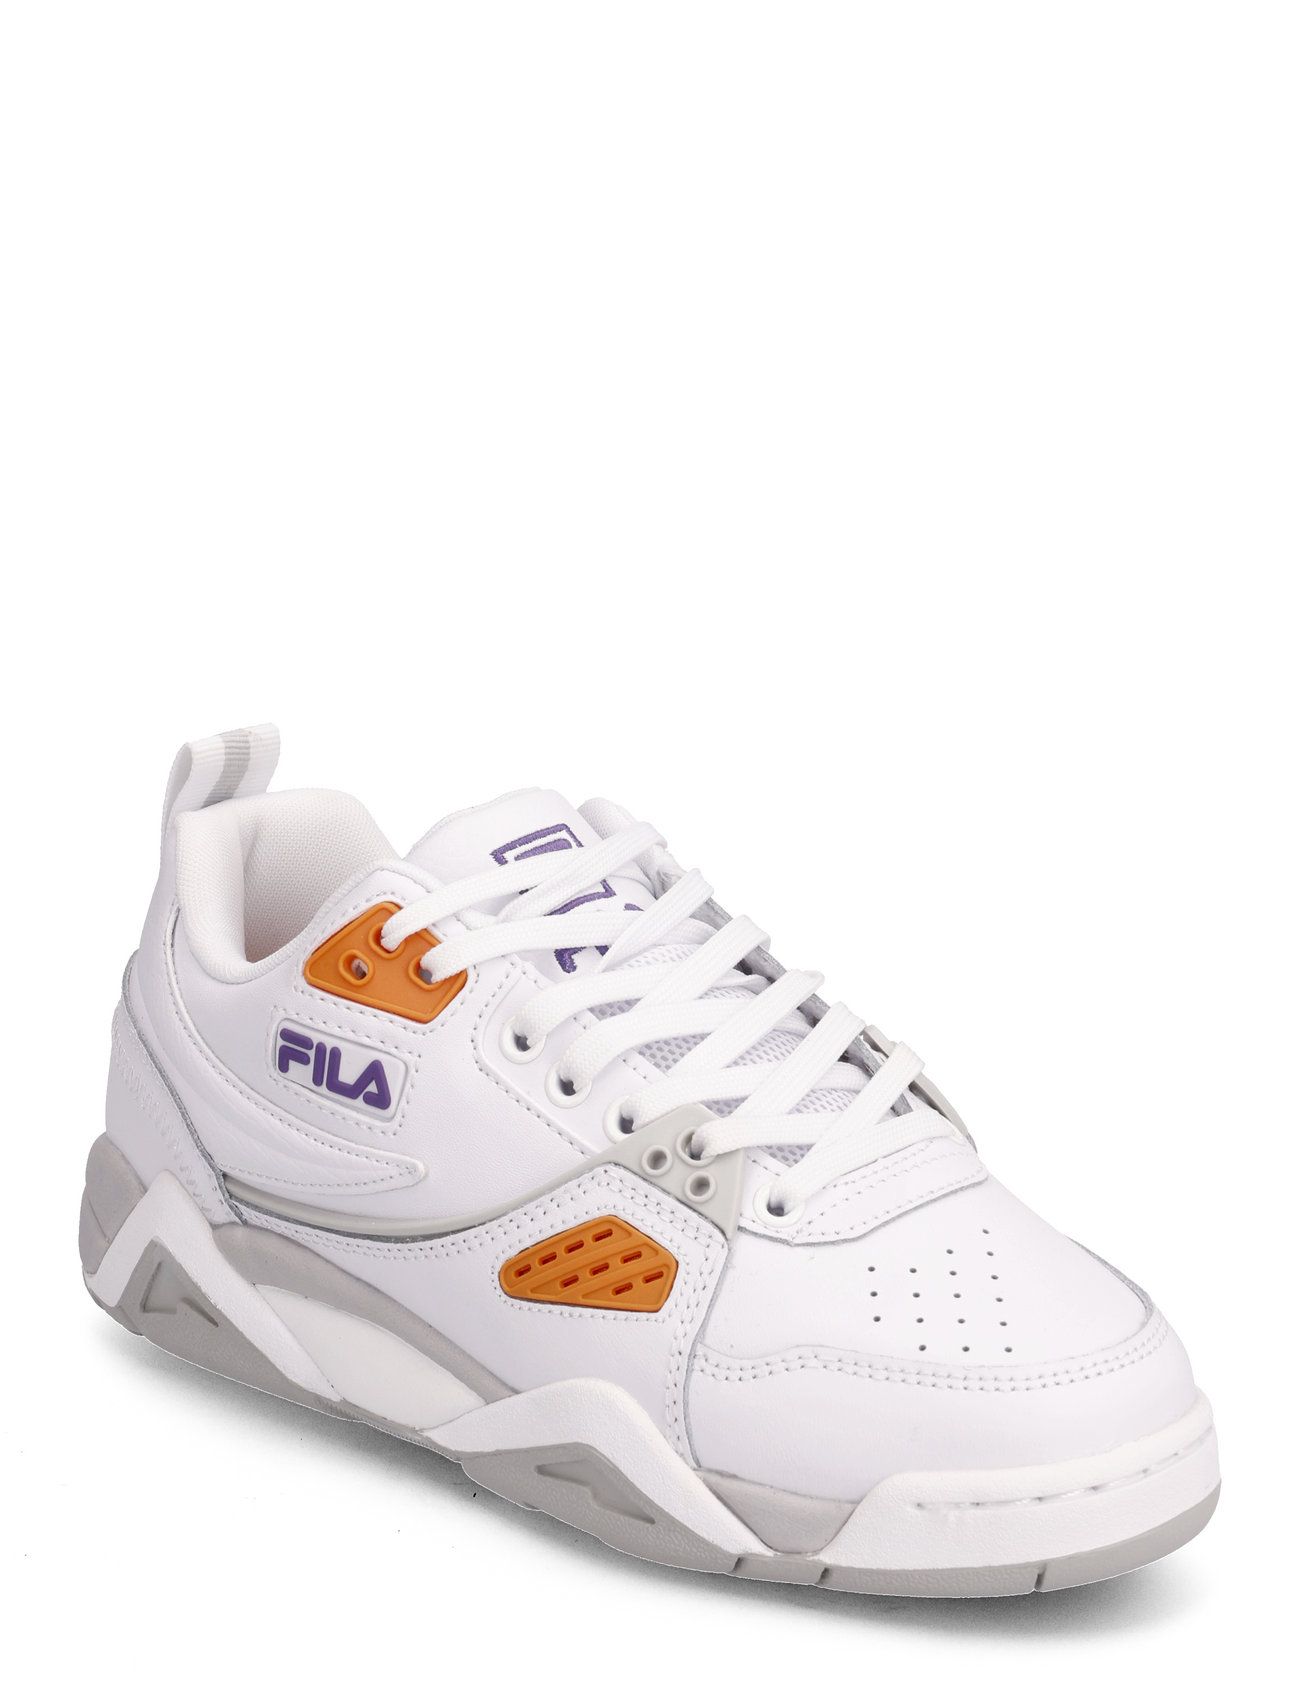 Fila Casim Wmn Sport Sneakers Low-top Sneakers White FILA